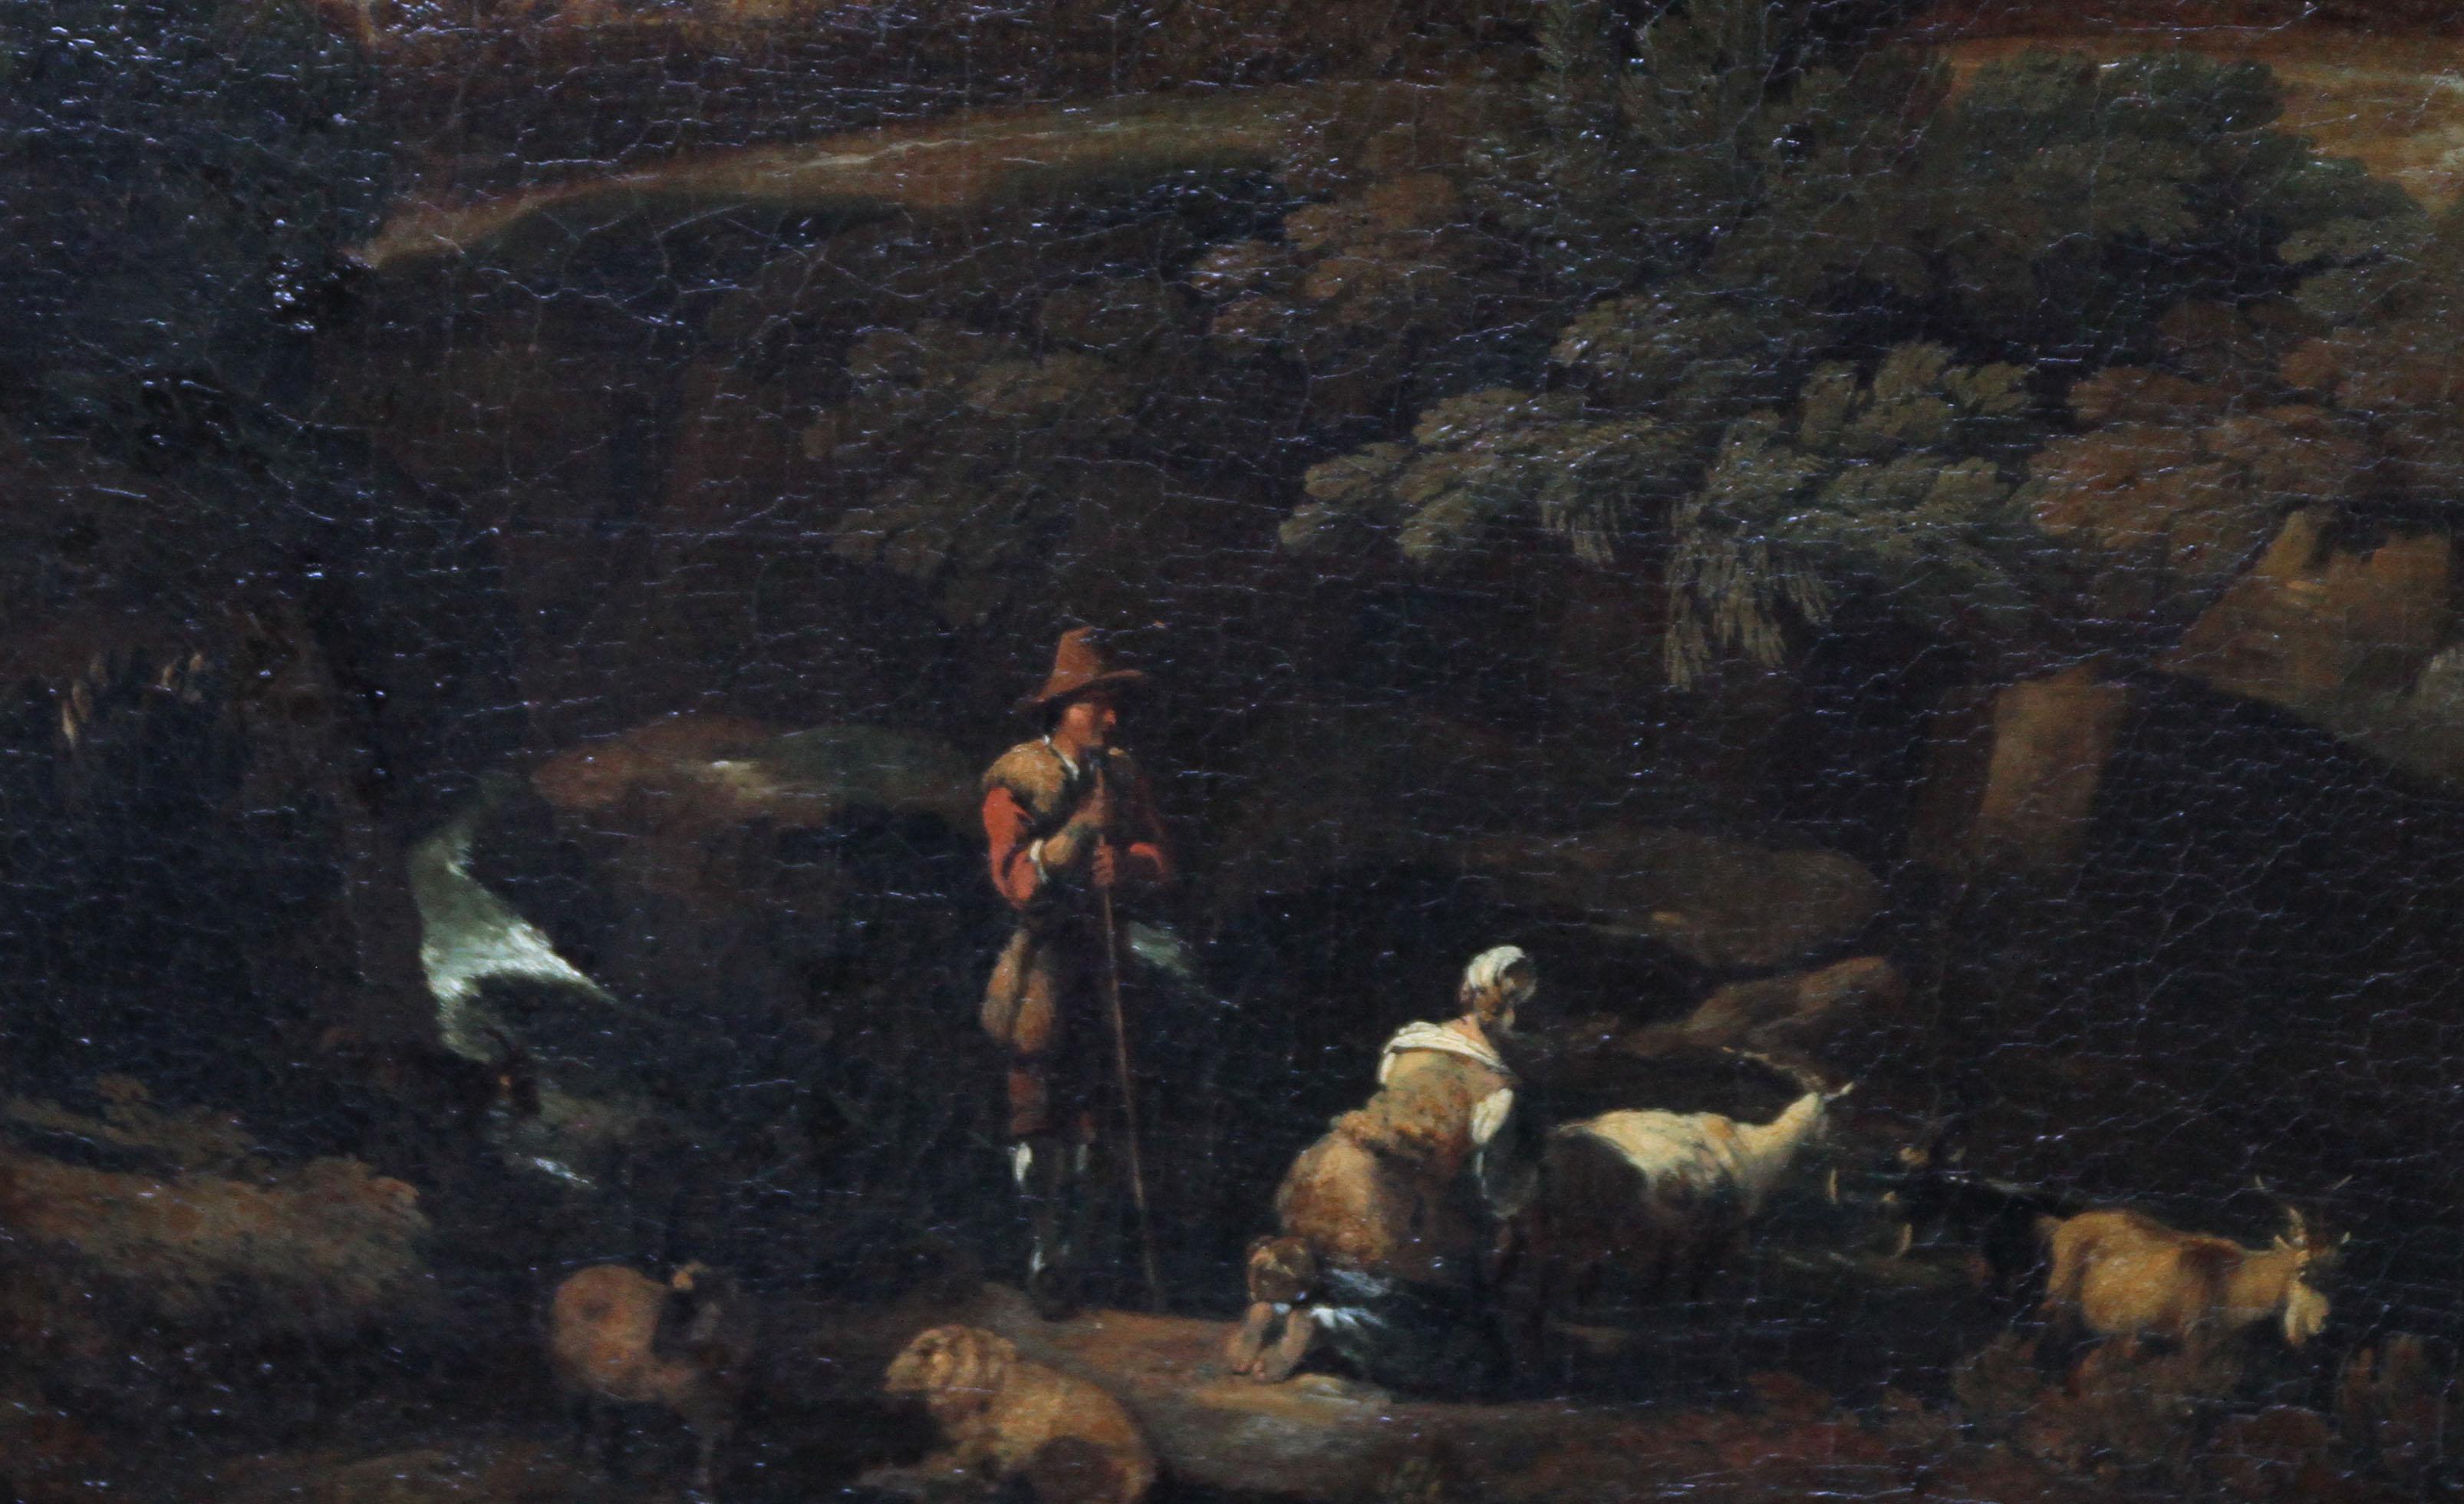 Délicat capriccio de paysage à l'huile sur toile représentant un paysage arcadien avec des personnages et des moutons et chèvres au premier plan. Un ciel d'orage et des arbres détruits peuplent le paysage et les personnages sont très raffinés et